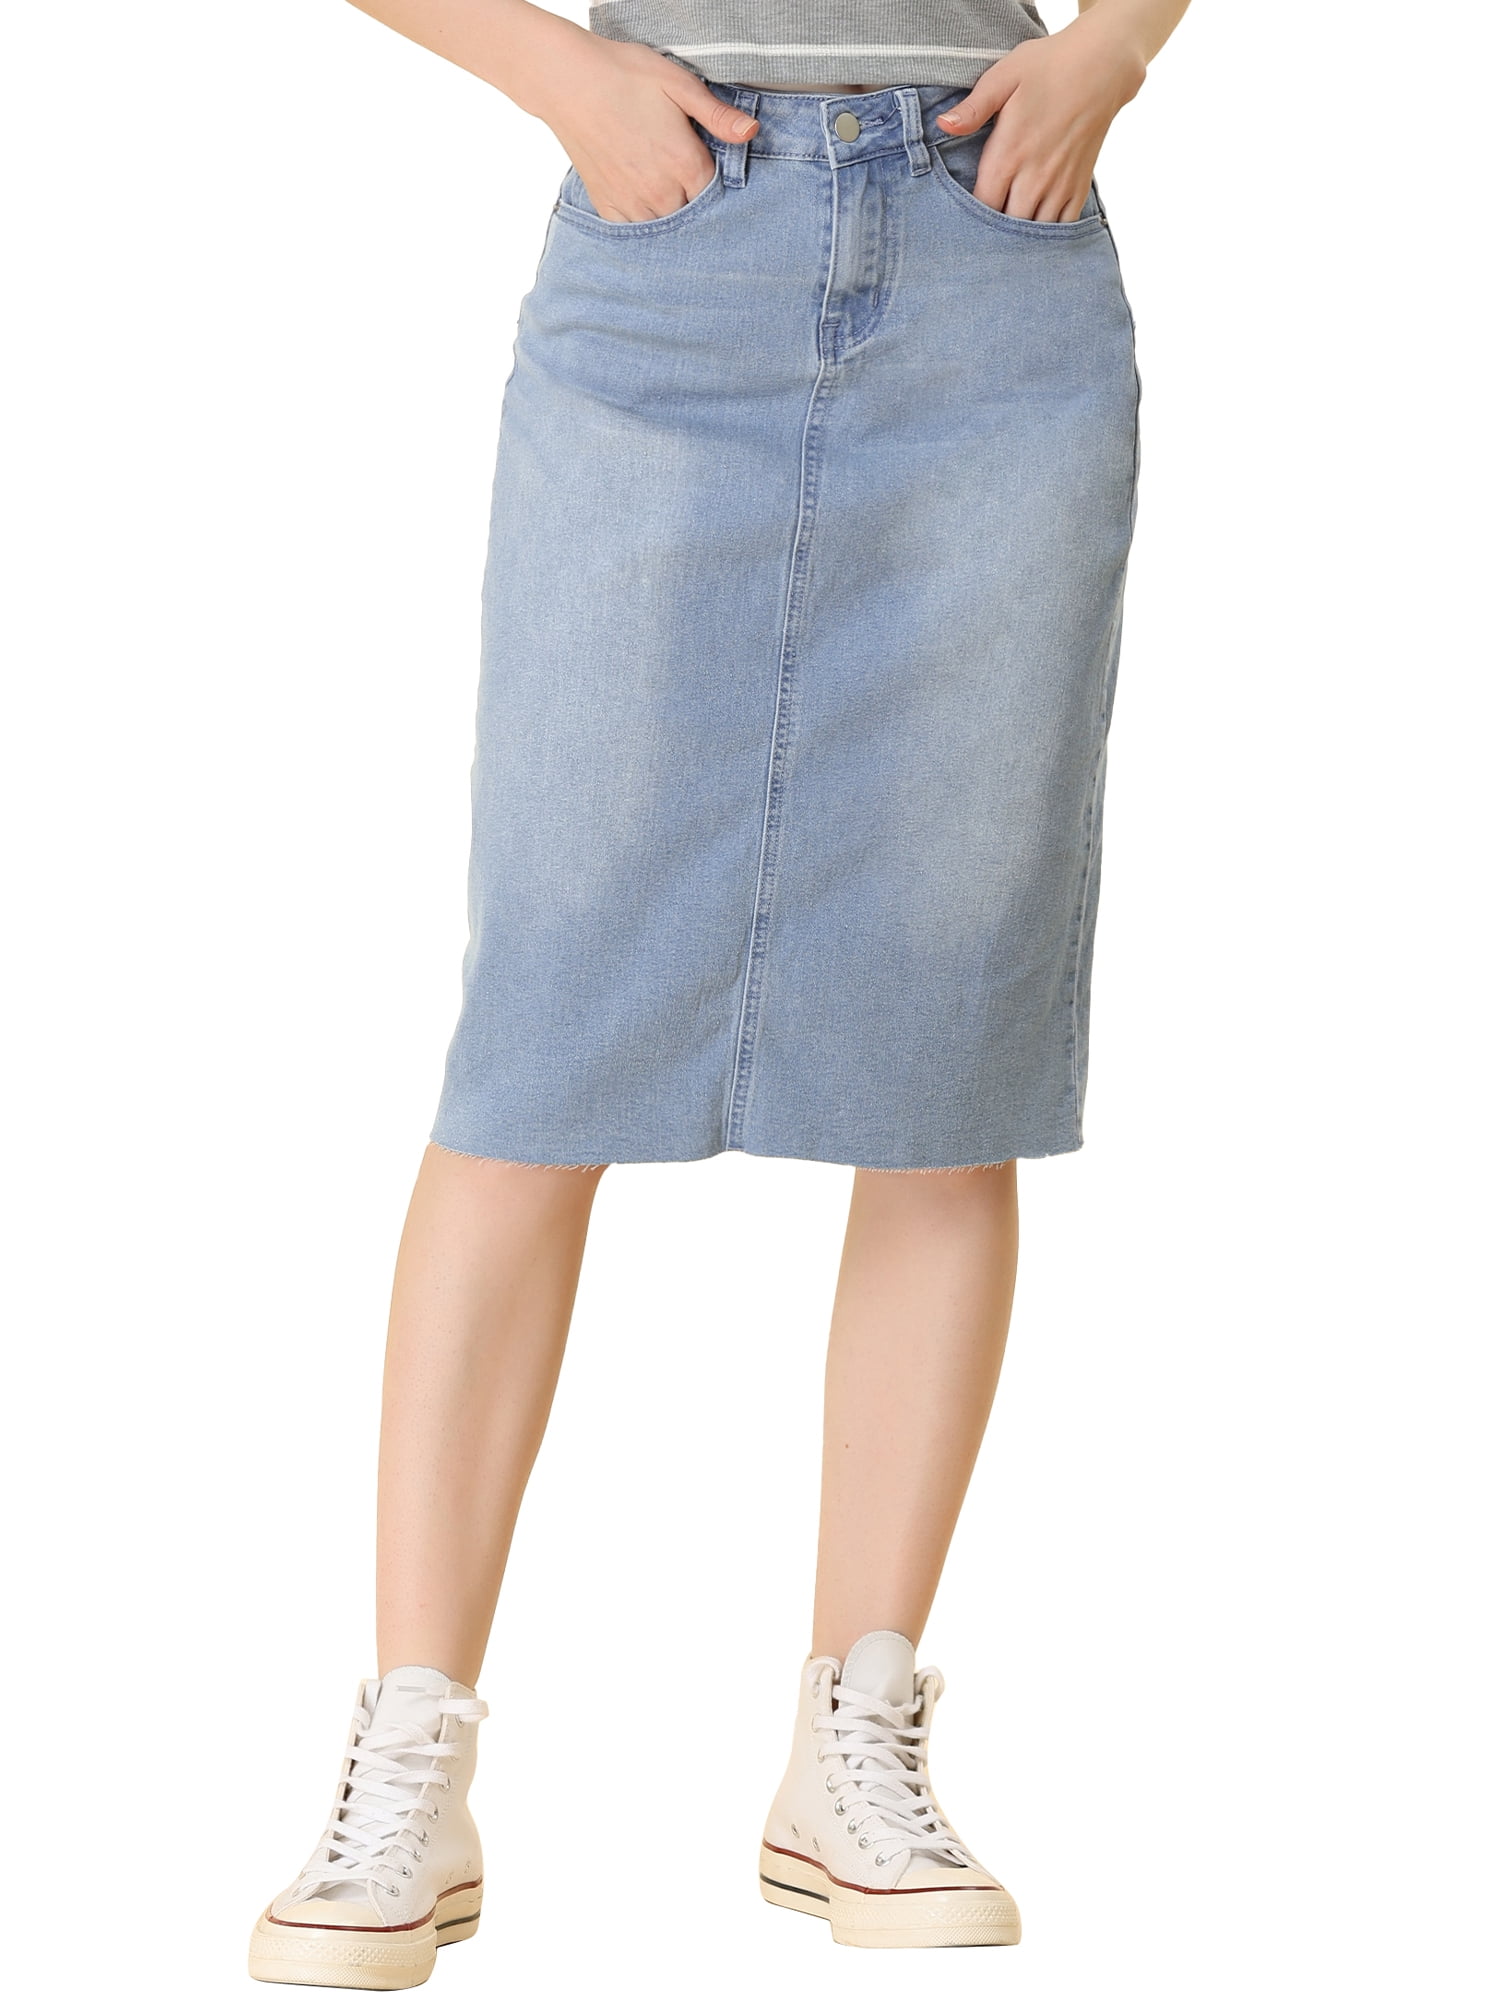 JNGSA Women's Casual Denim Skirt High Waist Split Front Long Jean Skirts  Retro Button Irregular Split Denim High Waist Denim Skirt Light Blue -  Walmart.com